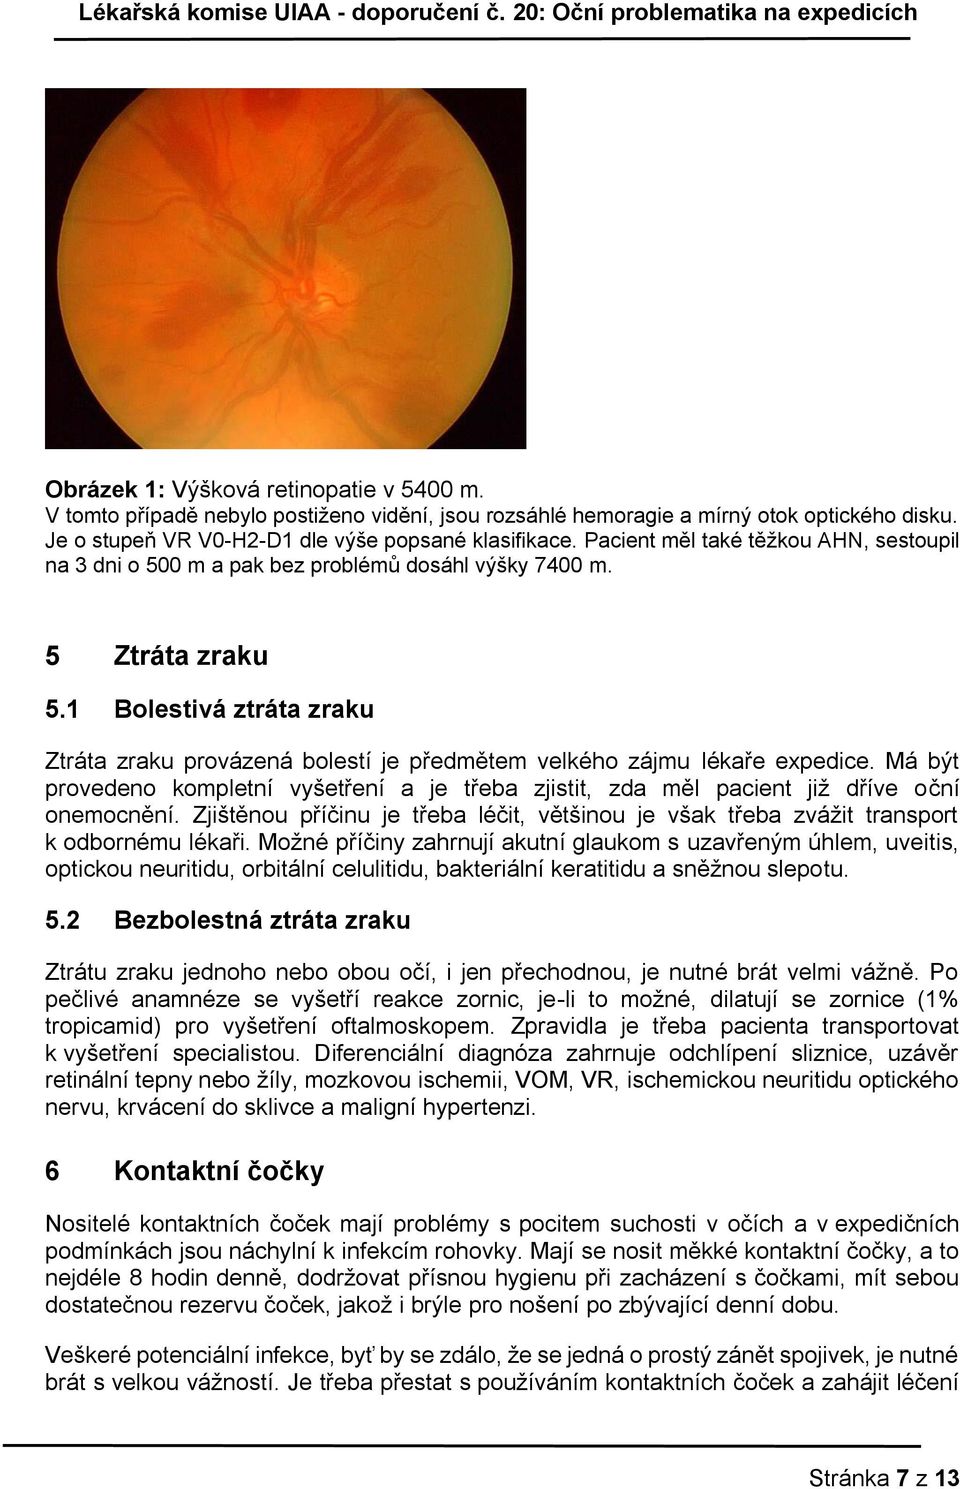 1 Bolestivá ztráta zraku Ztráta zraku provázená bolestí je předmětem velkého zájmu lékaře expedice. Má být provedeno kompletní vyšetření a je třeba zjistit, zda měl pacient již dříve oční onemocnění.